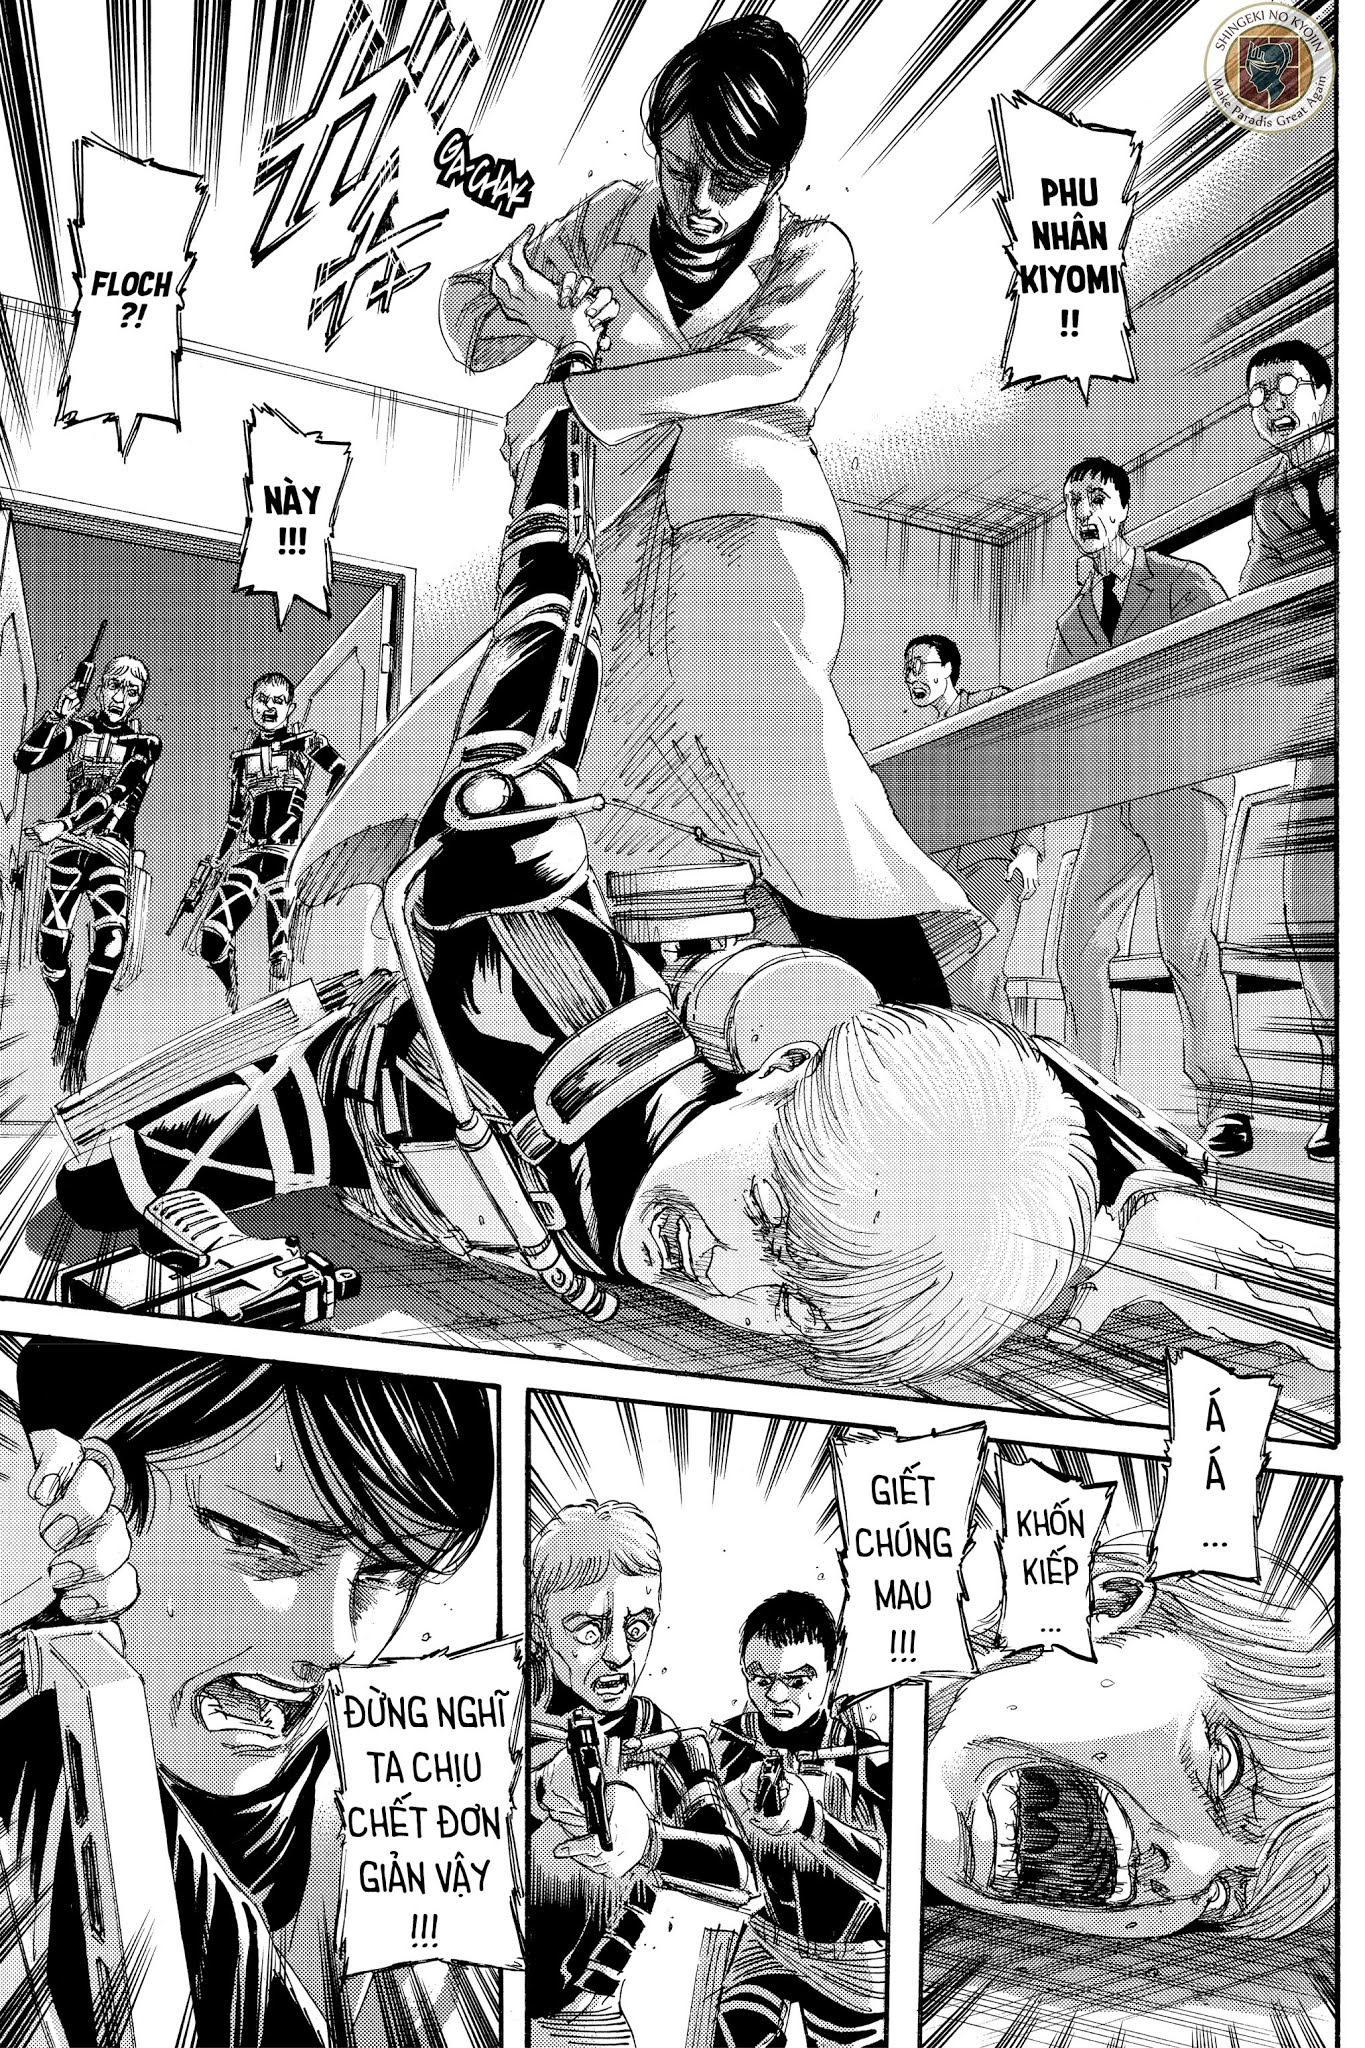 Shingeki no Kyojin - Attack on Titan